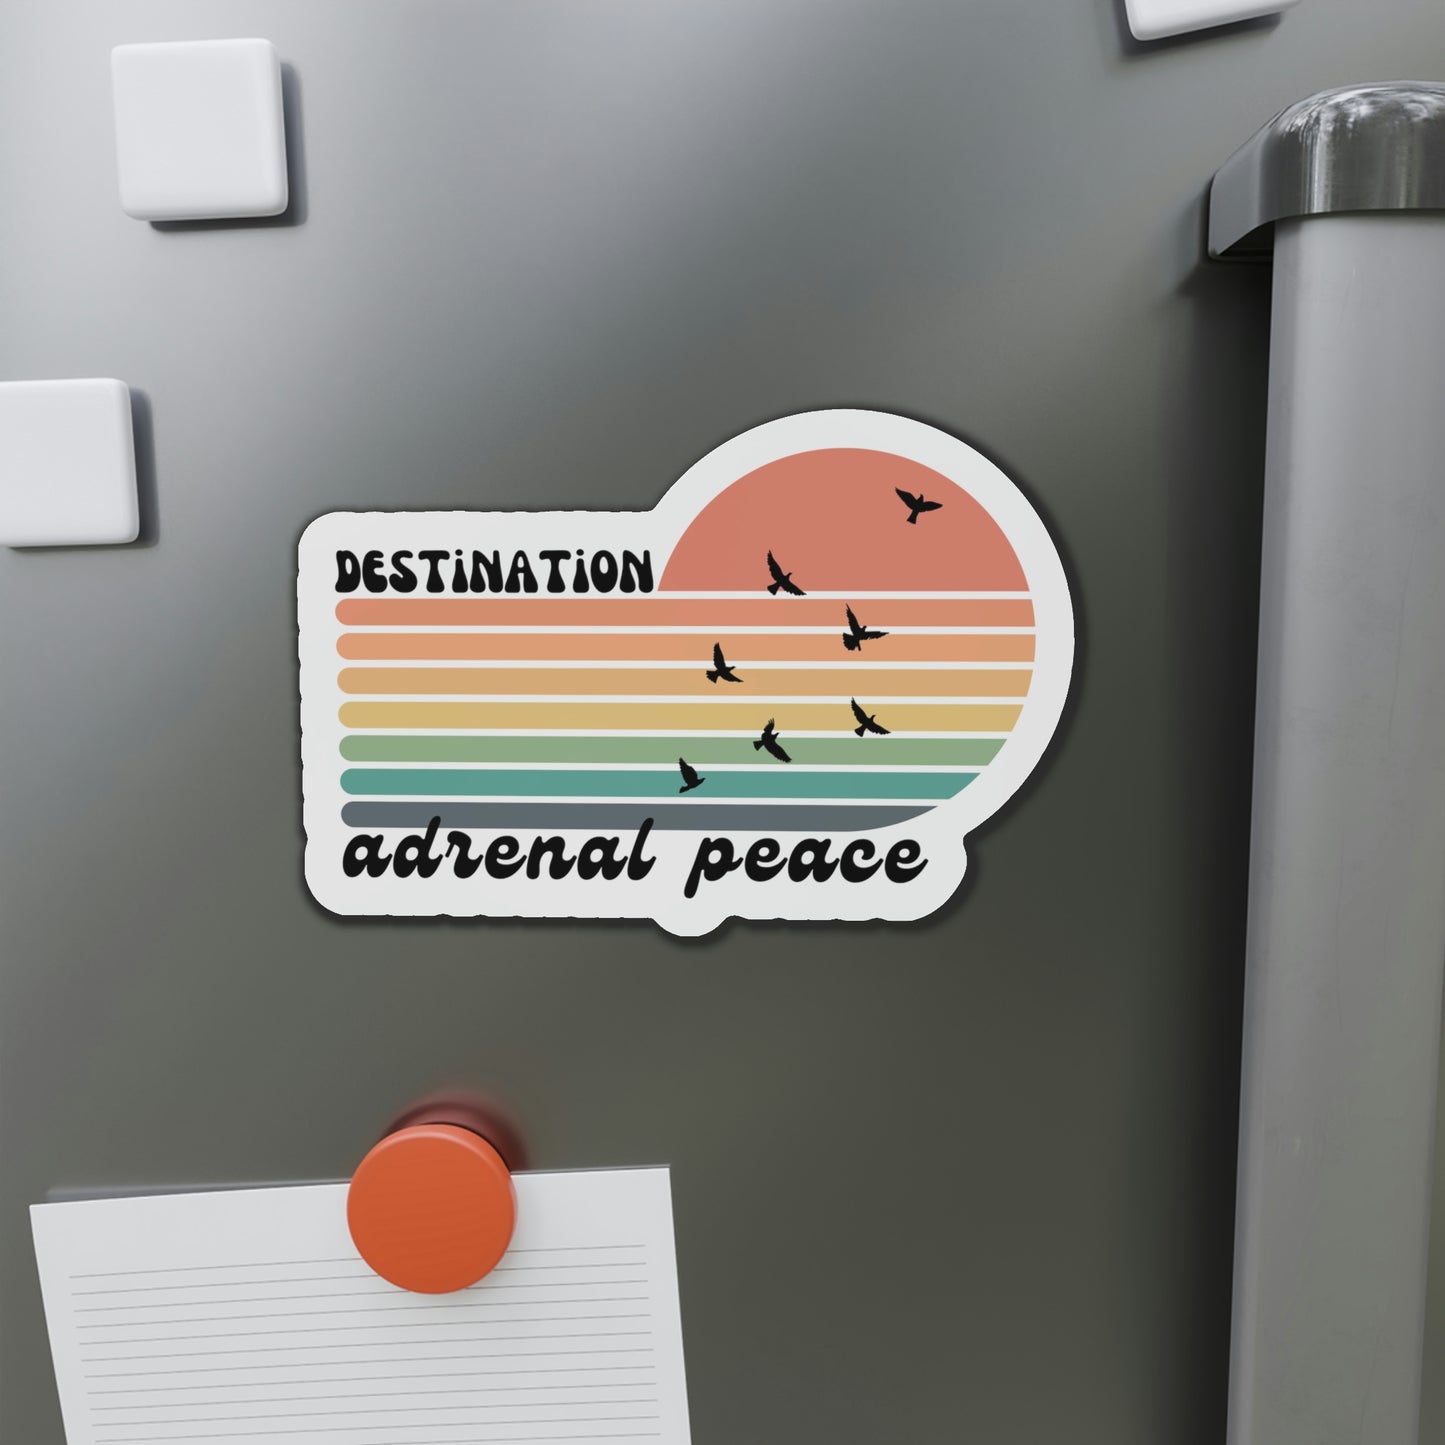 Destination: Adrenal Peace (retro rainbow) Die-Cut Magnets